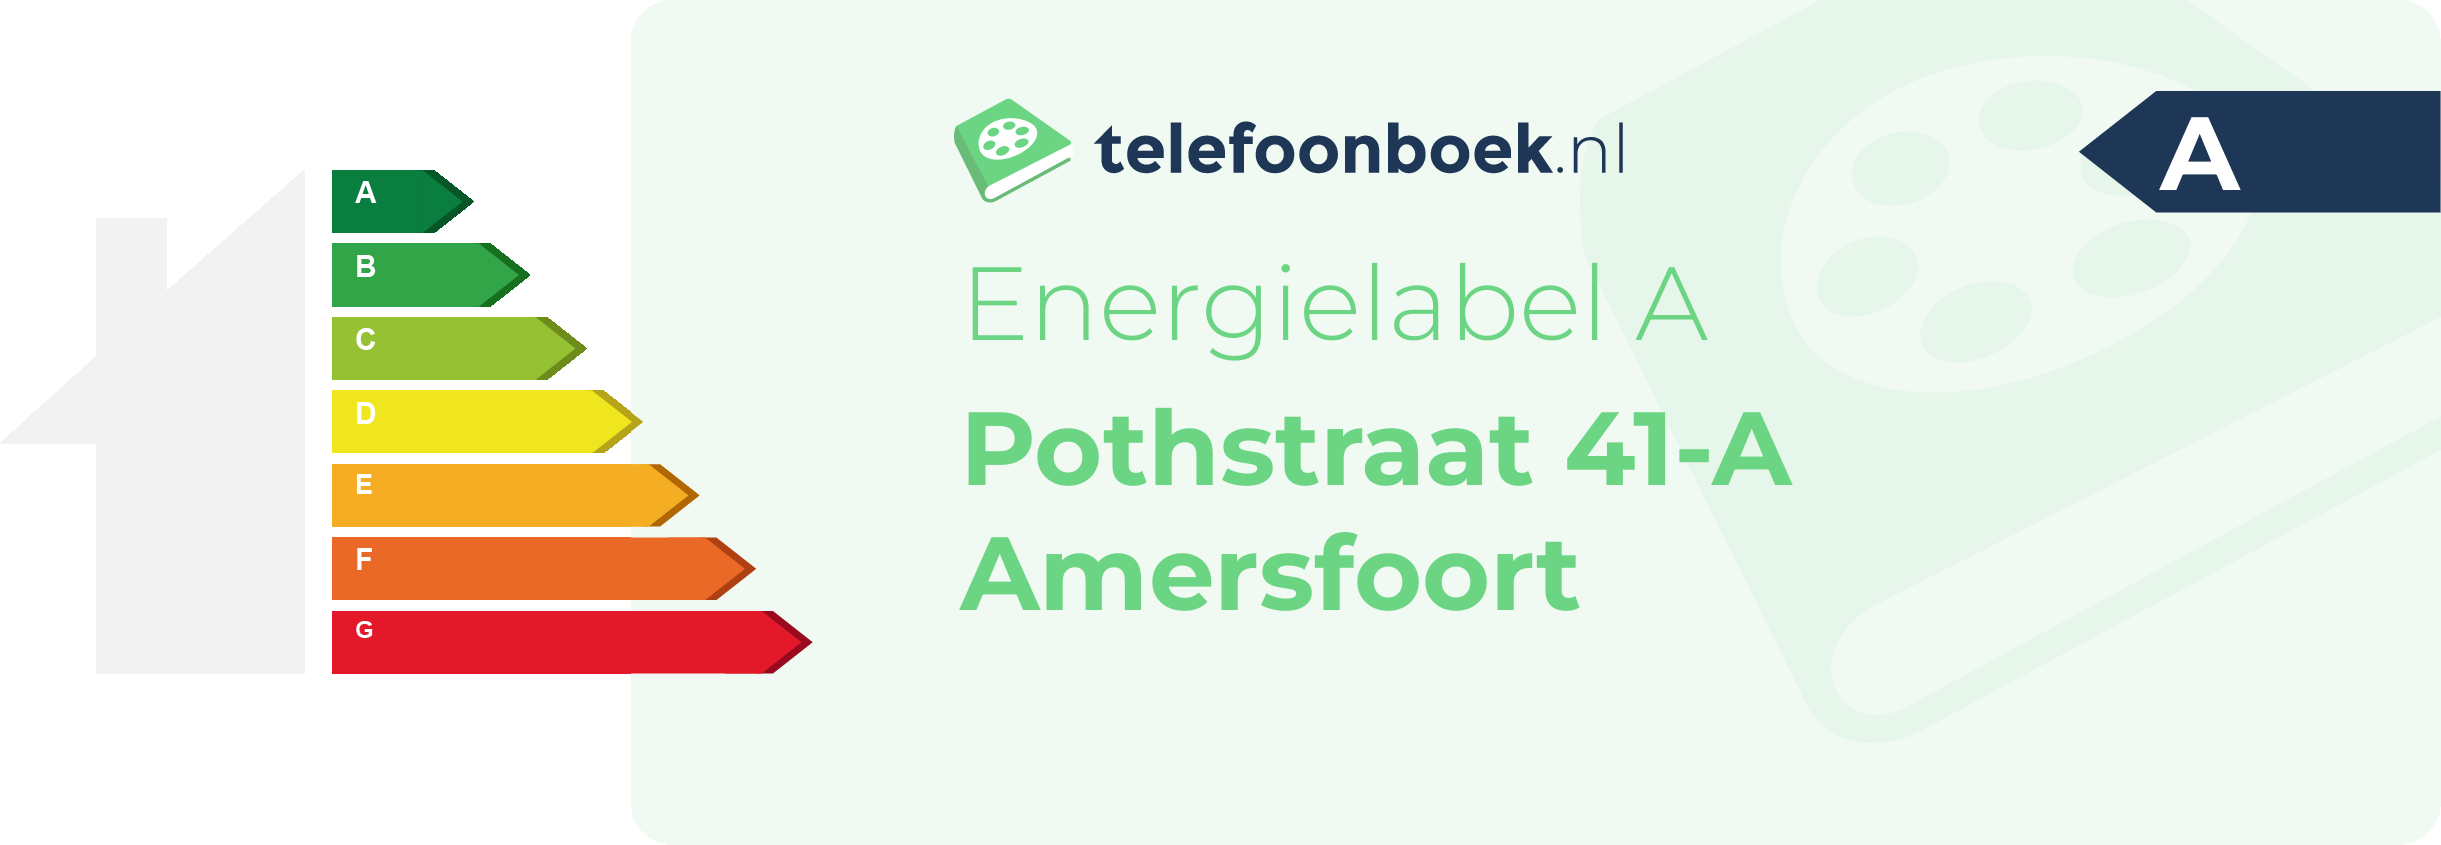 Energielabel Pothstraat 41-A Amersfoort